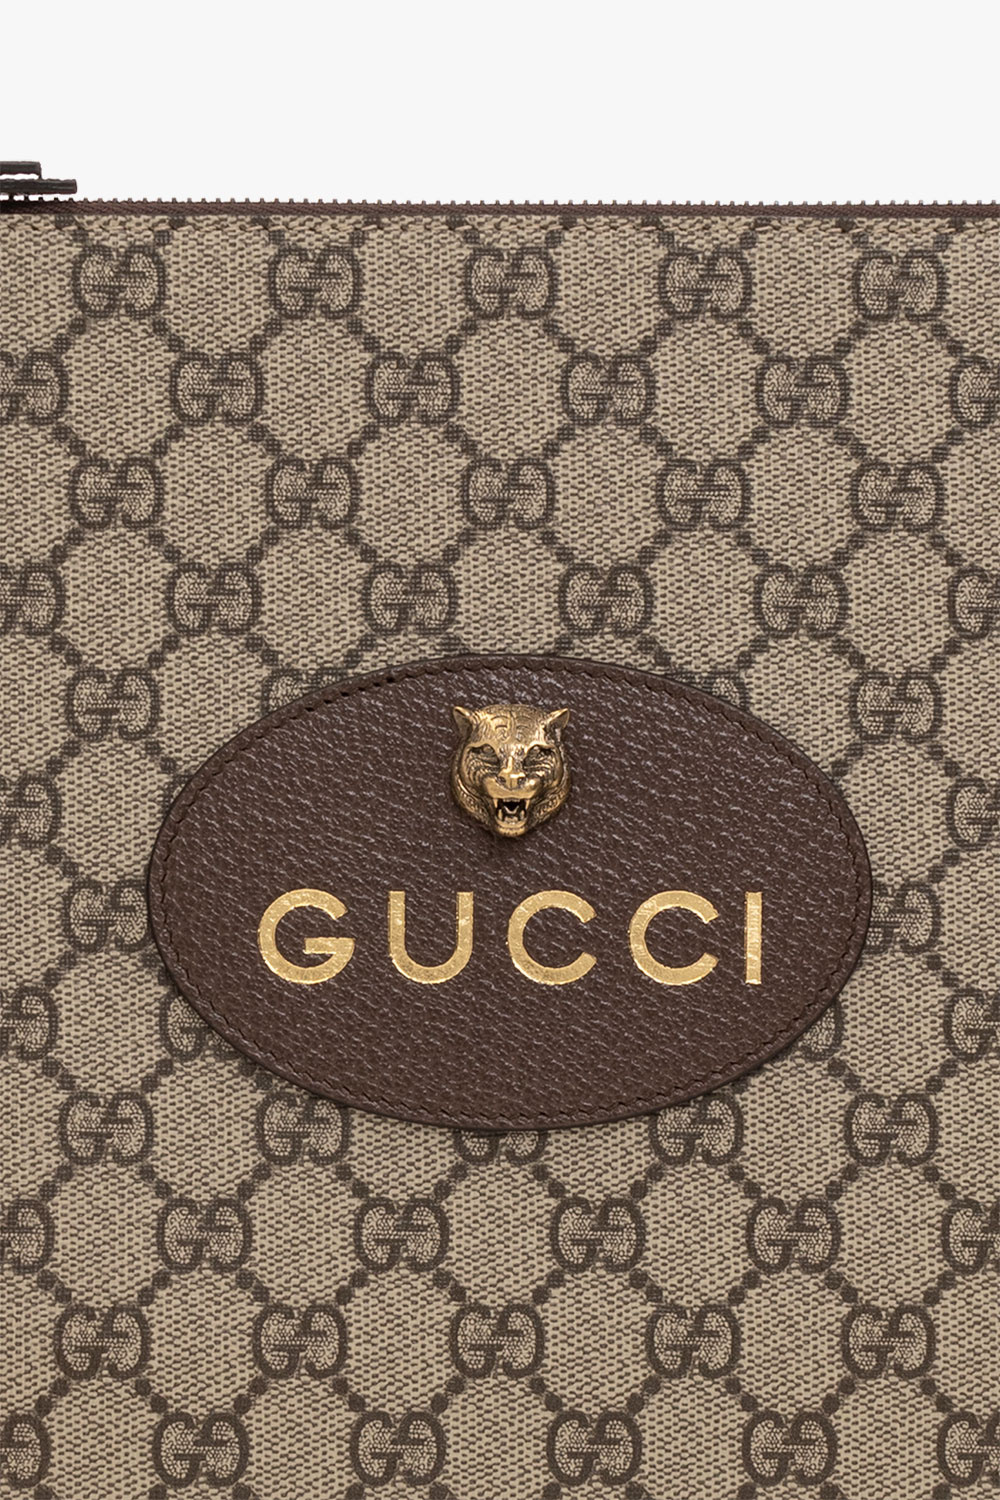 gucci for ‘Neo Vintage’ handbag